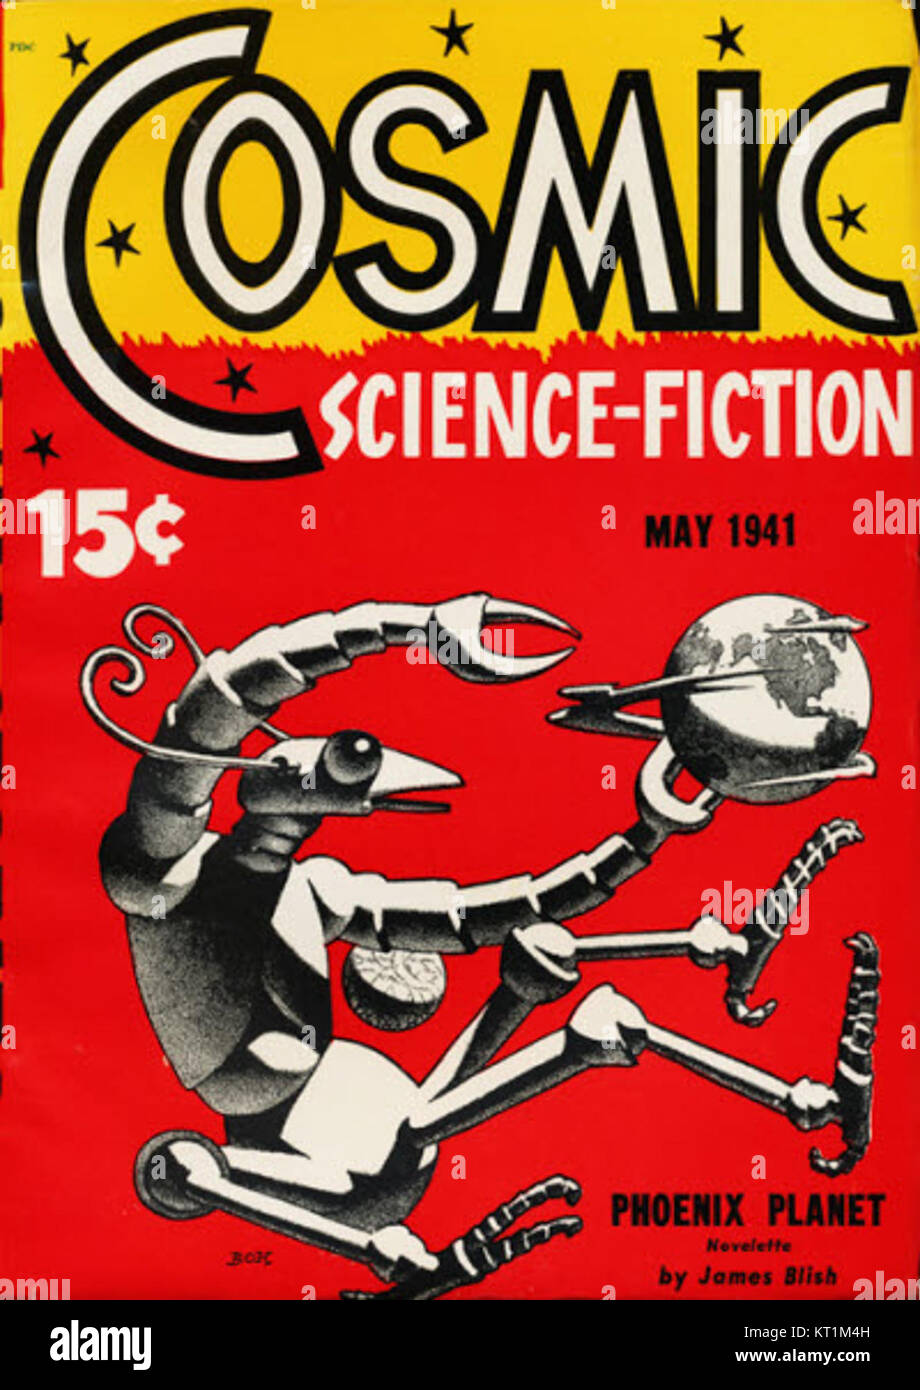 Mai 1941 Science-Fiction cosmique Banque D'Images